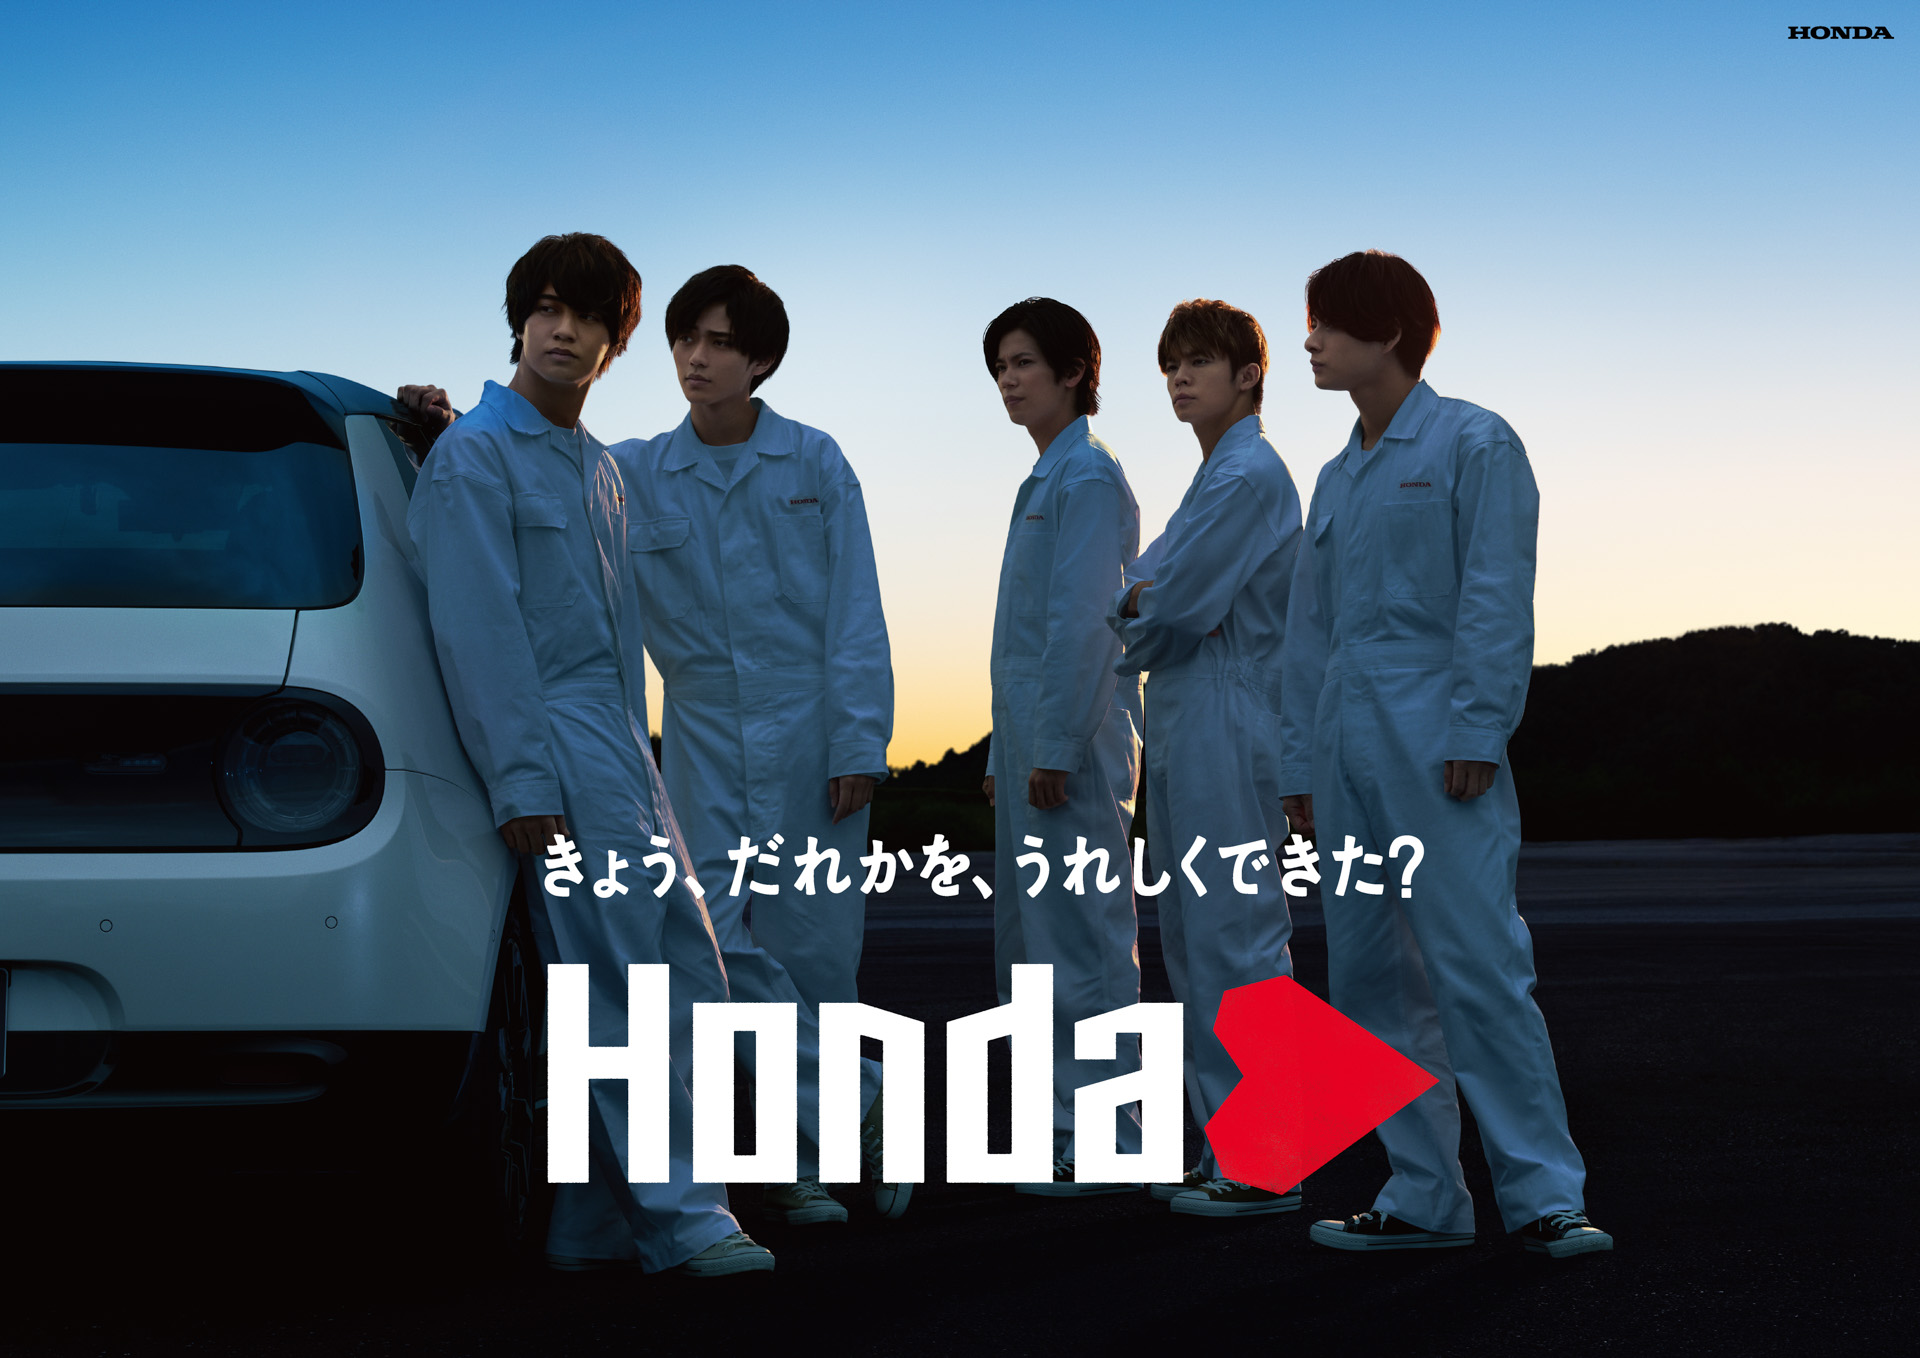 ホンダ、ツナギ姿のKing & Princeメンバーが登場する「Hondaハート